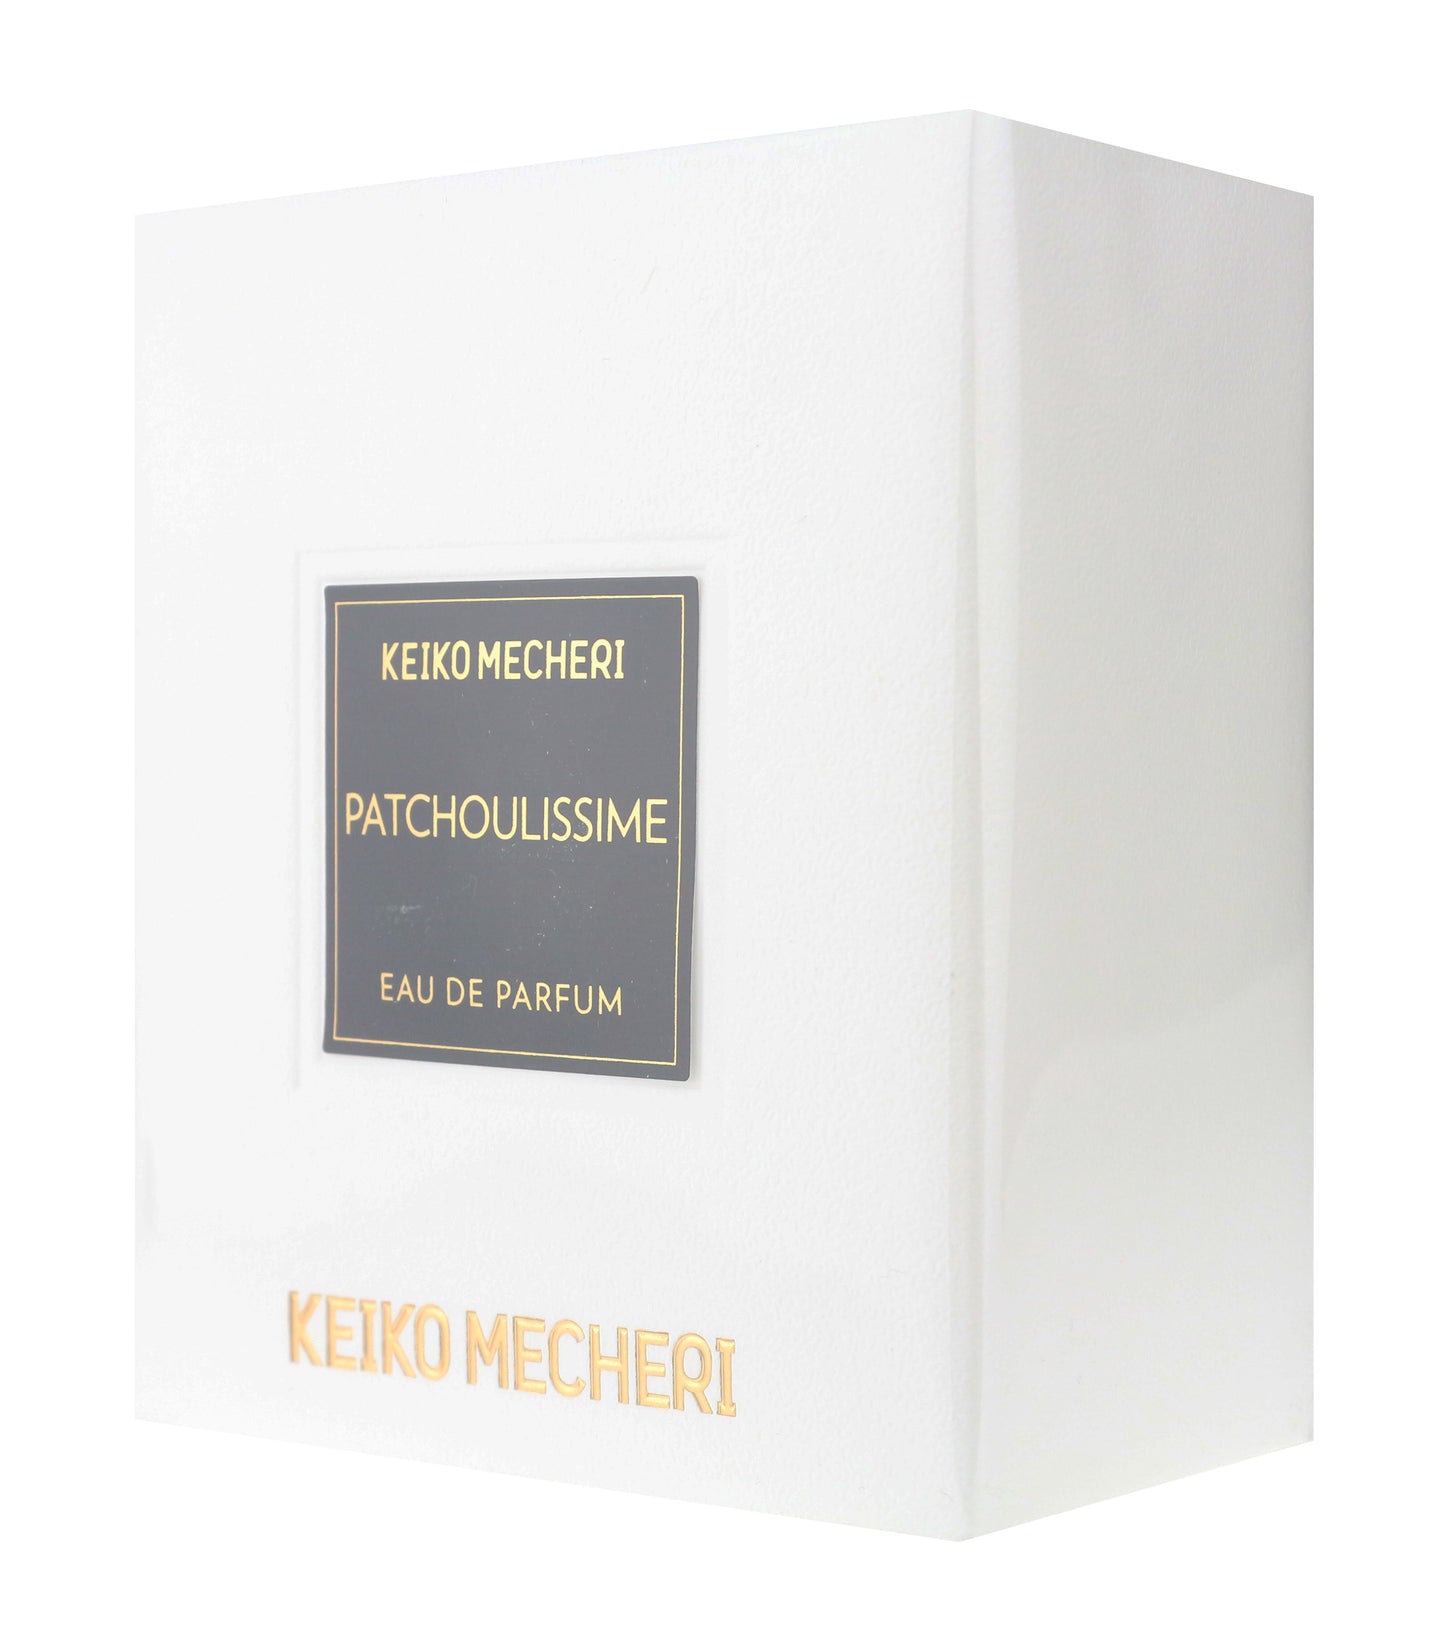 Keiko Mecheri 'Patchoulissime' Eau De Parfum 2.5oz New In Box